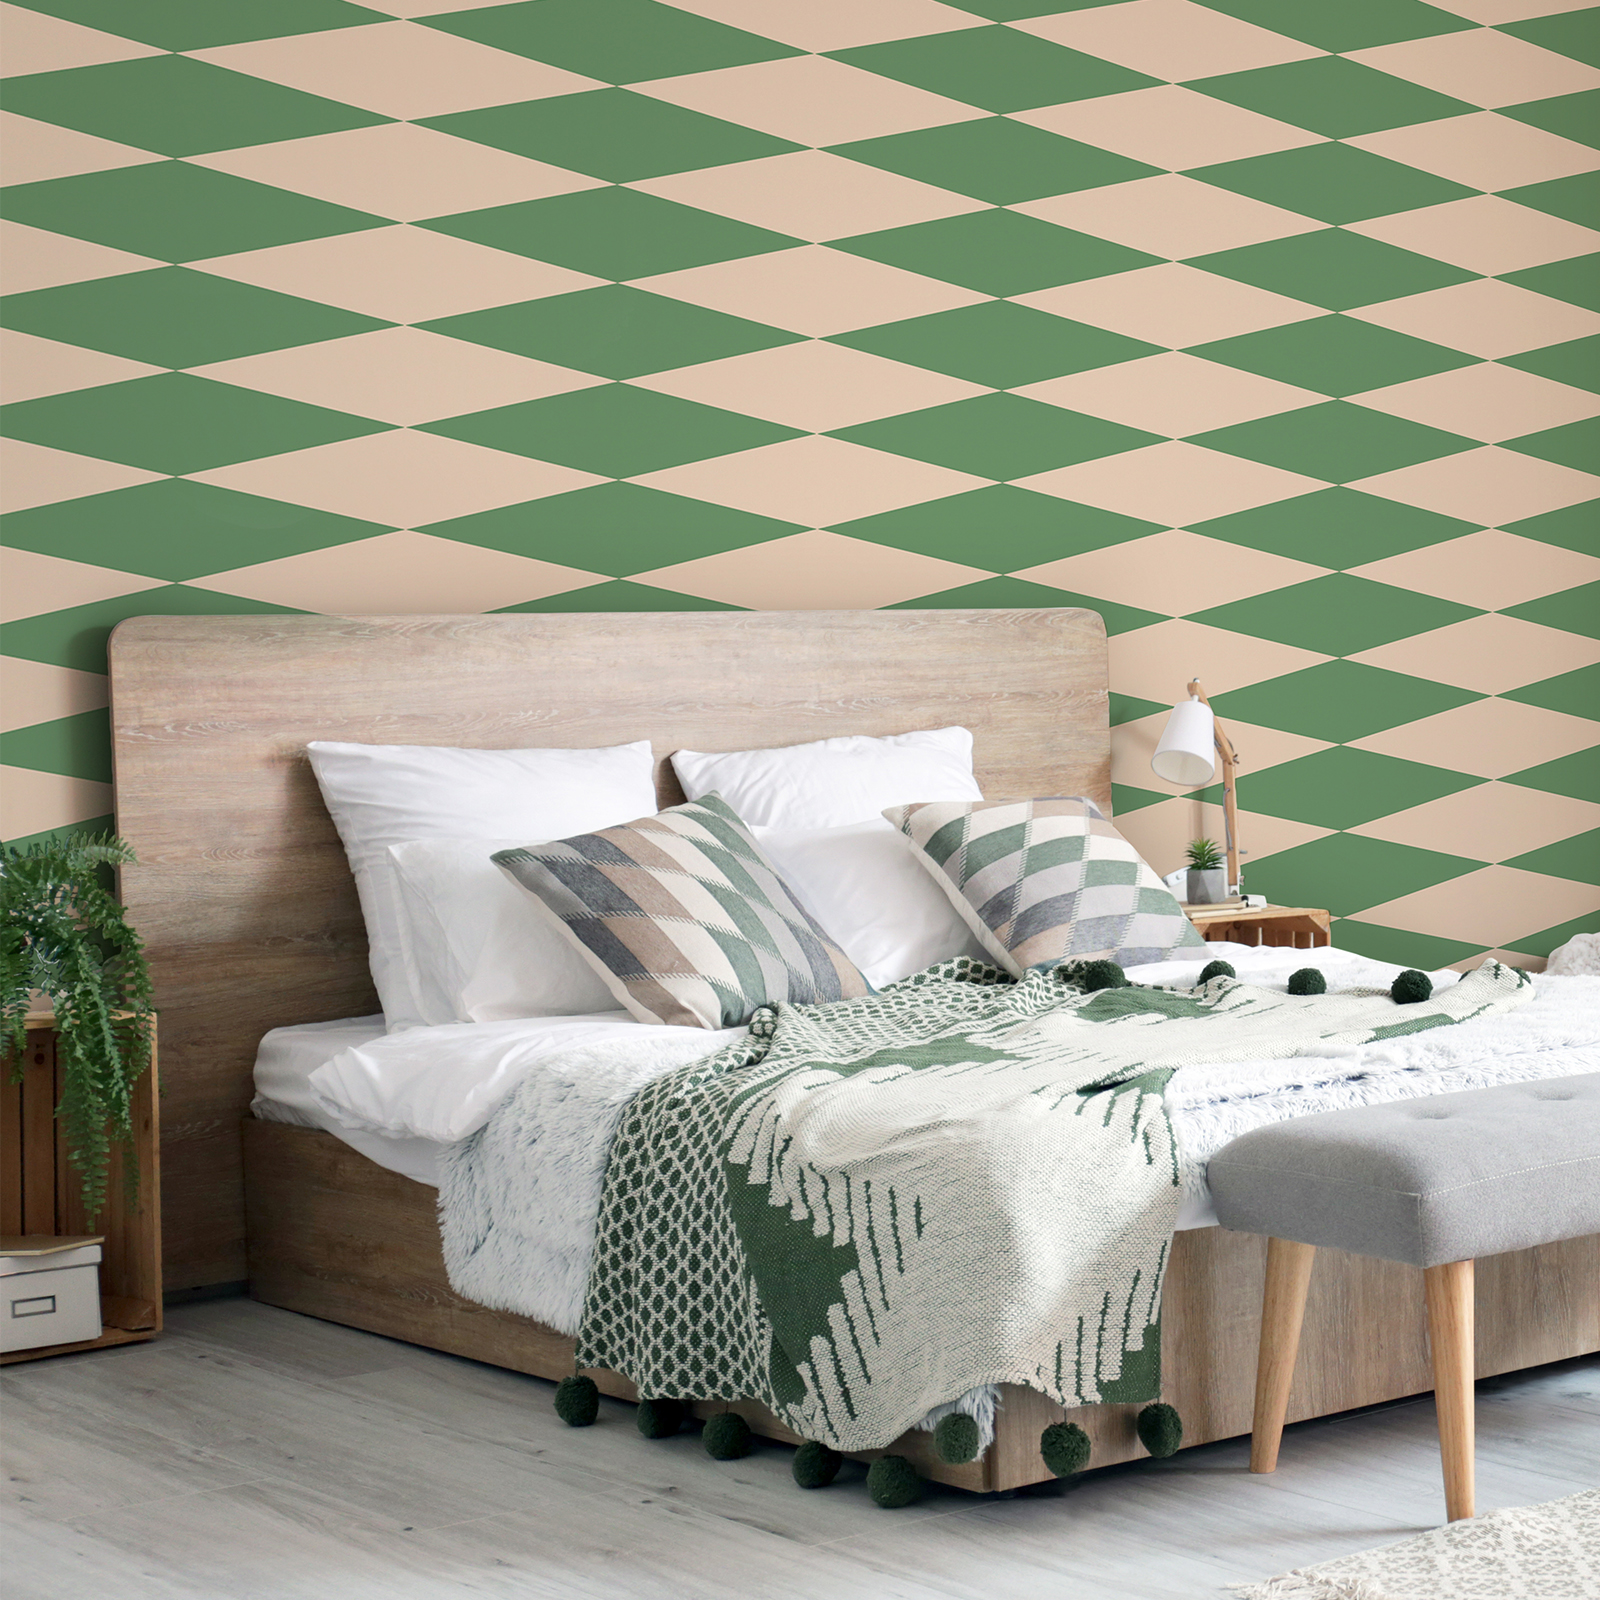 70s Look Lozenge Wallpaper - Green, Beige | Textured Nonwoven
